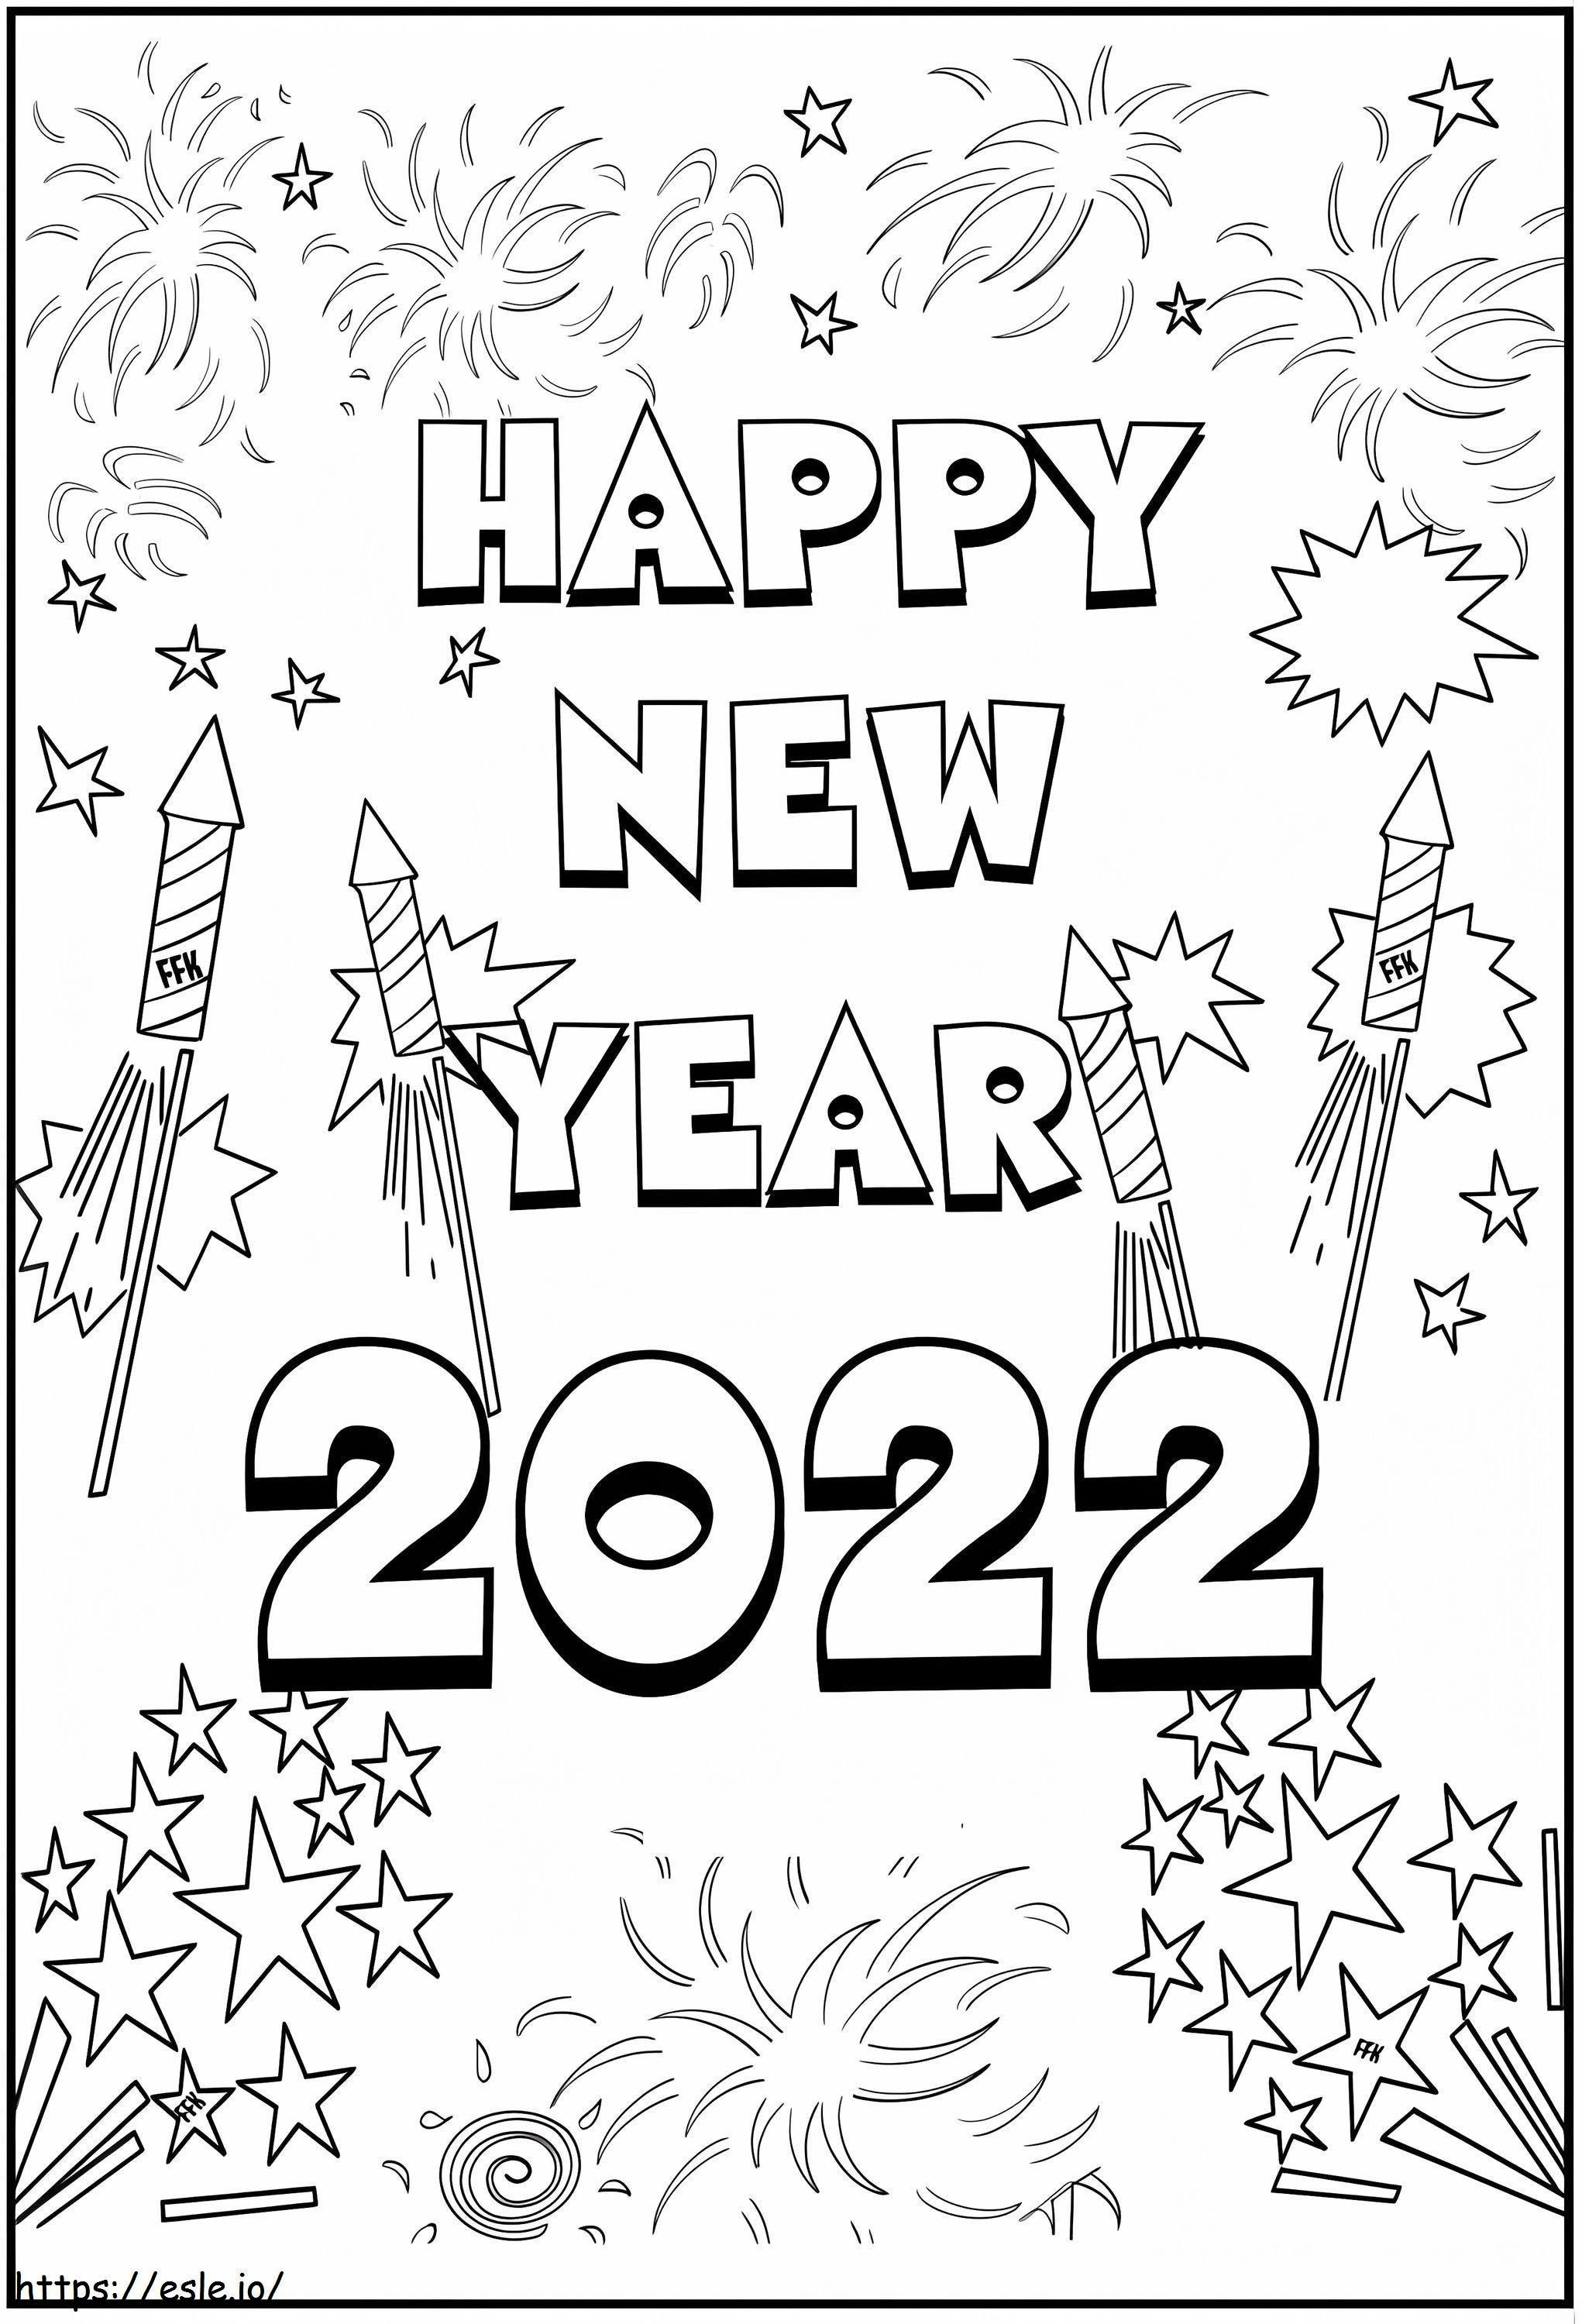 Szczęśliwego Nowego Roku 2022 z fajerwerkami kolorowanka